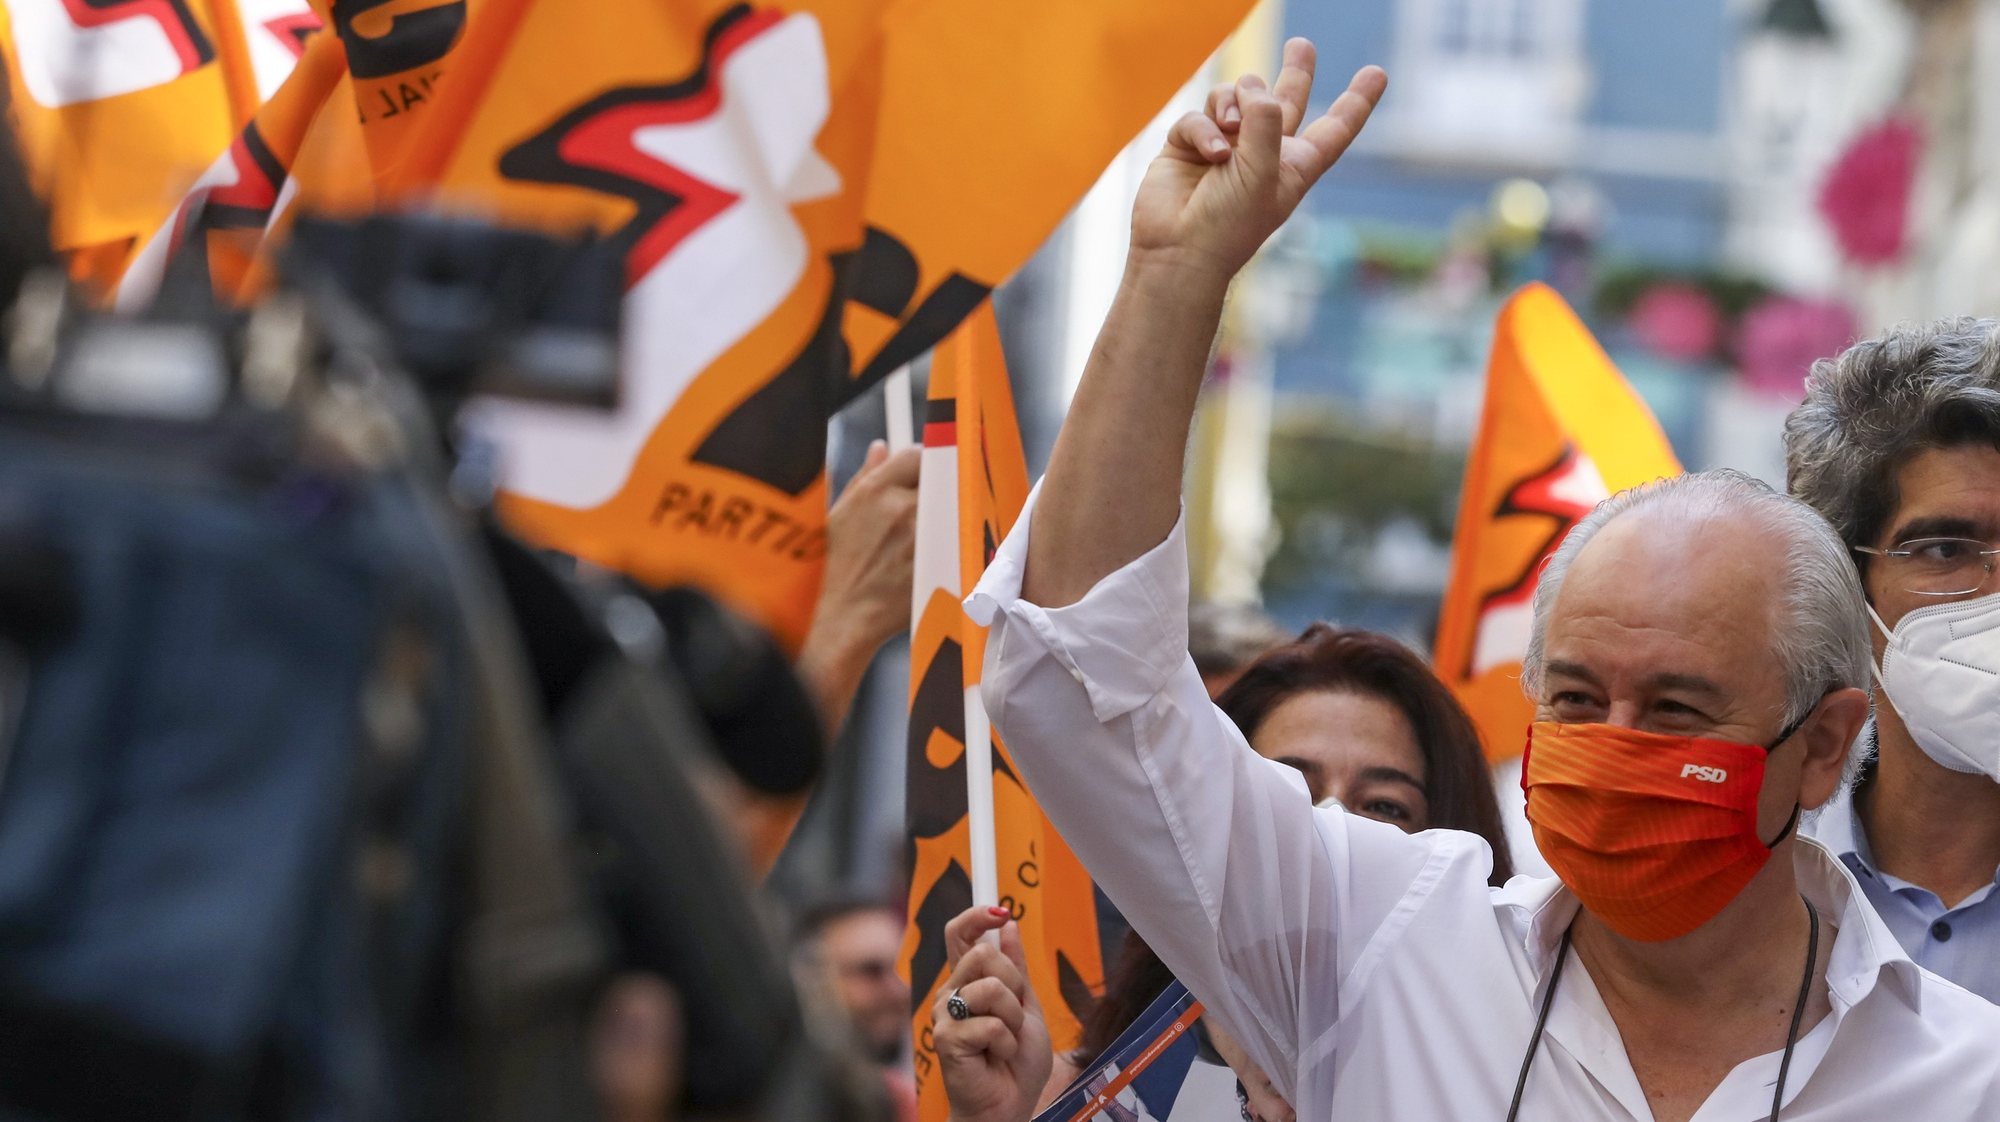 O presidente do Partido Social Democrata (PSD), Rui Rio, durante uma ação de campanha em Setúbal, 17 de setembro de 2021. No próximo dia 26 de setembro mais de 9,3 milhões eleitores podem votar nas eleições Autárquicas, para eleger os seus representantes locais. JOSÉ COELHO/LUSA